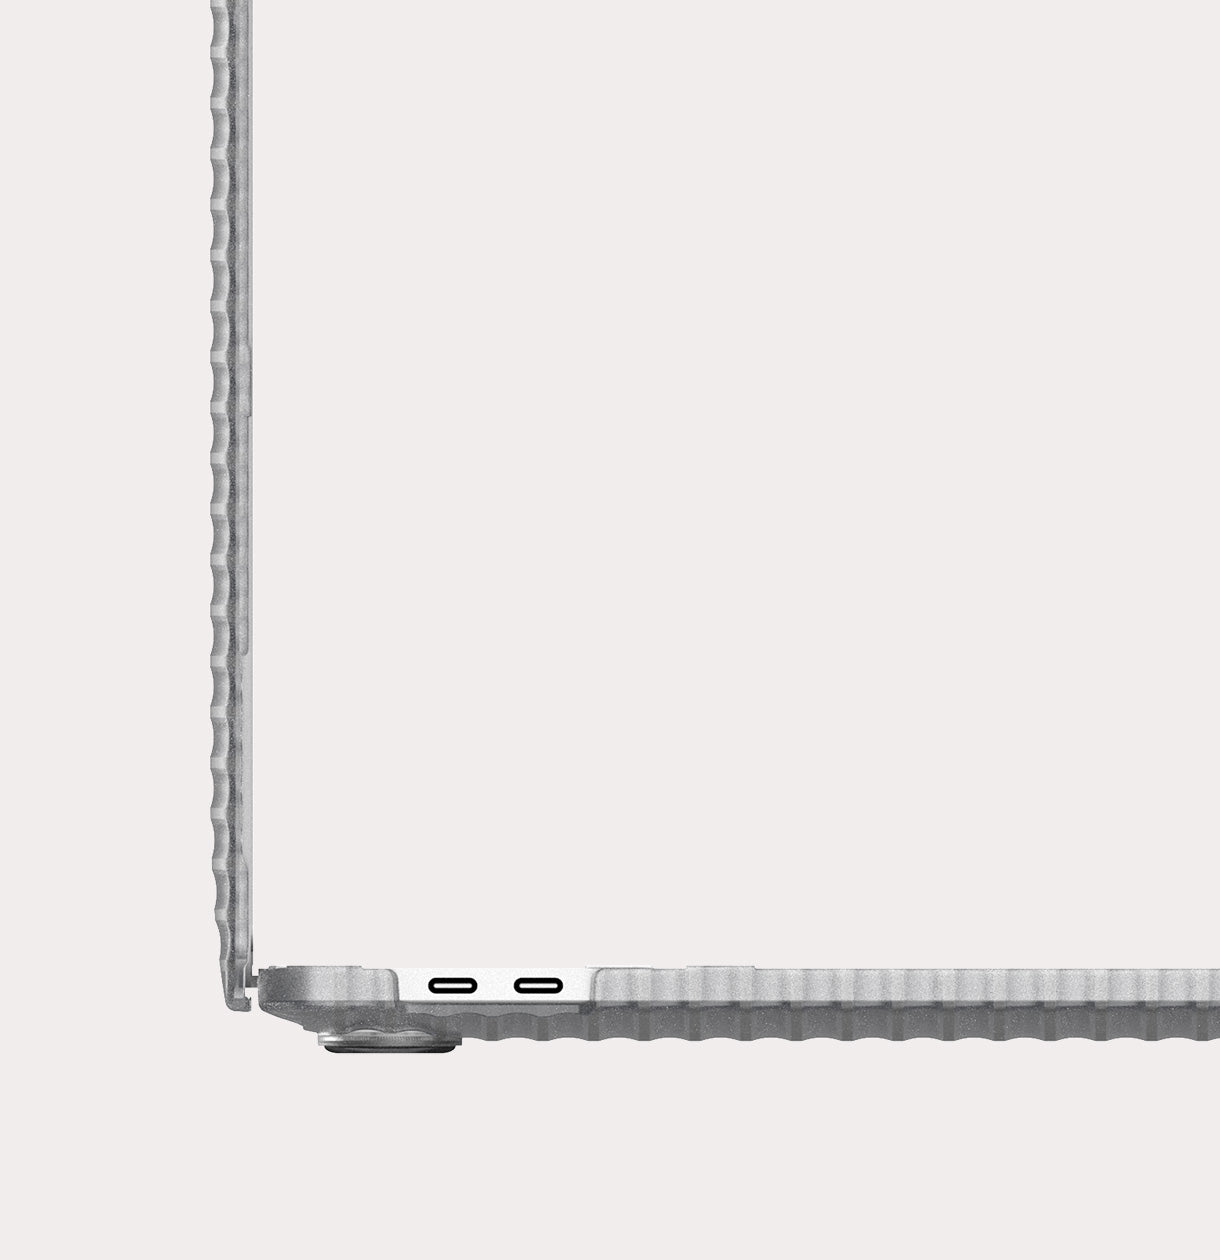 Sièges auto nacelles et coques Tech21 Coque Pure Clear MacBook Air